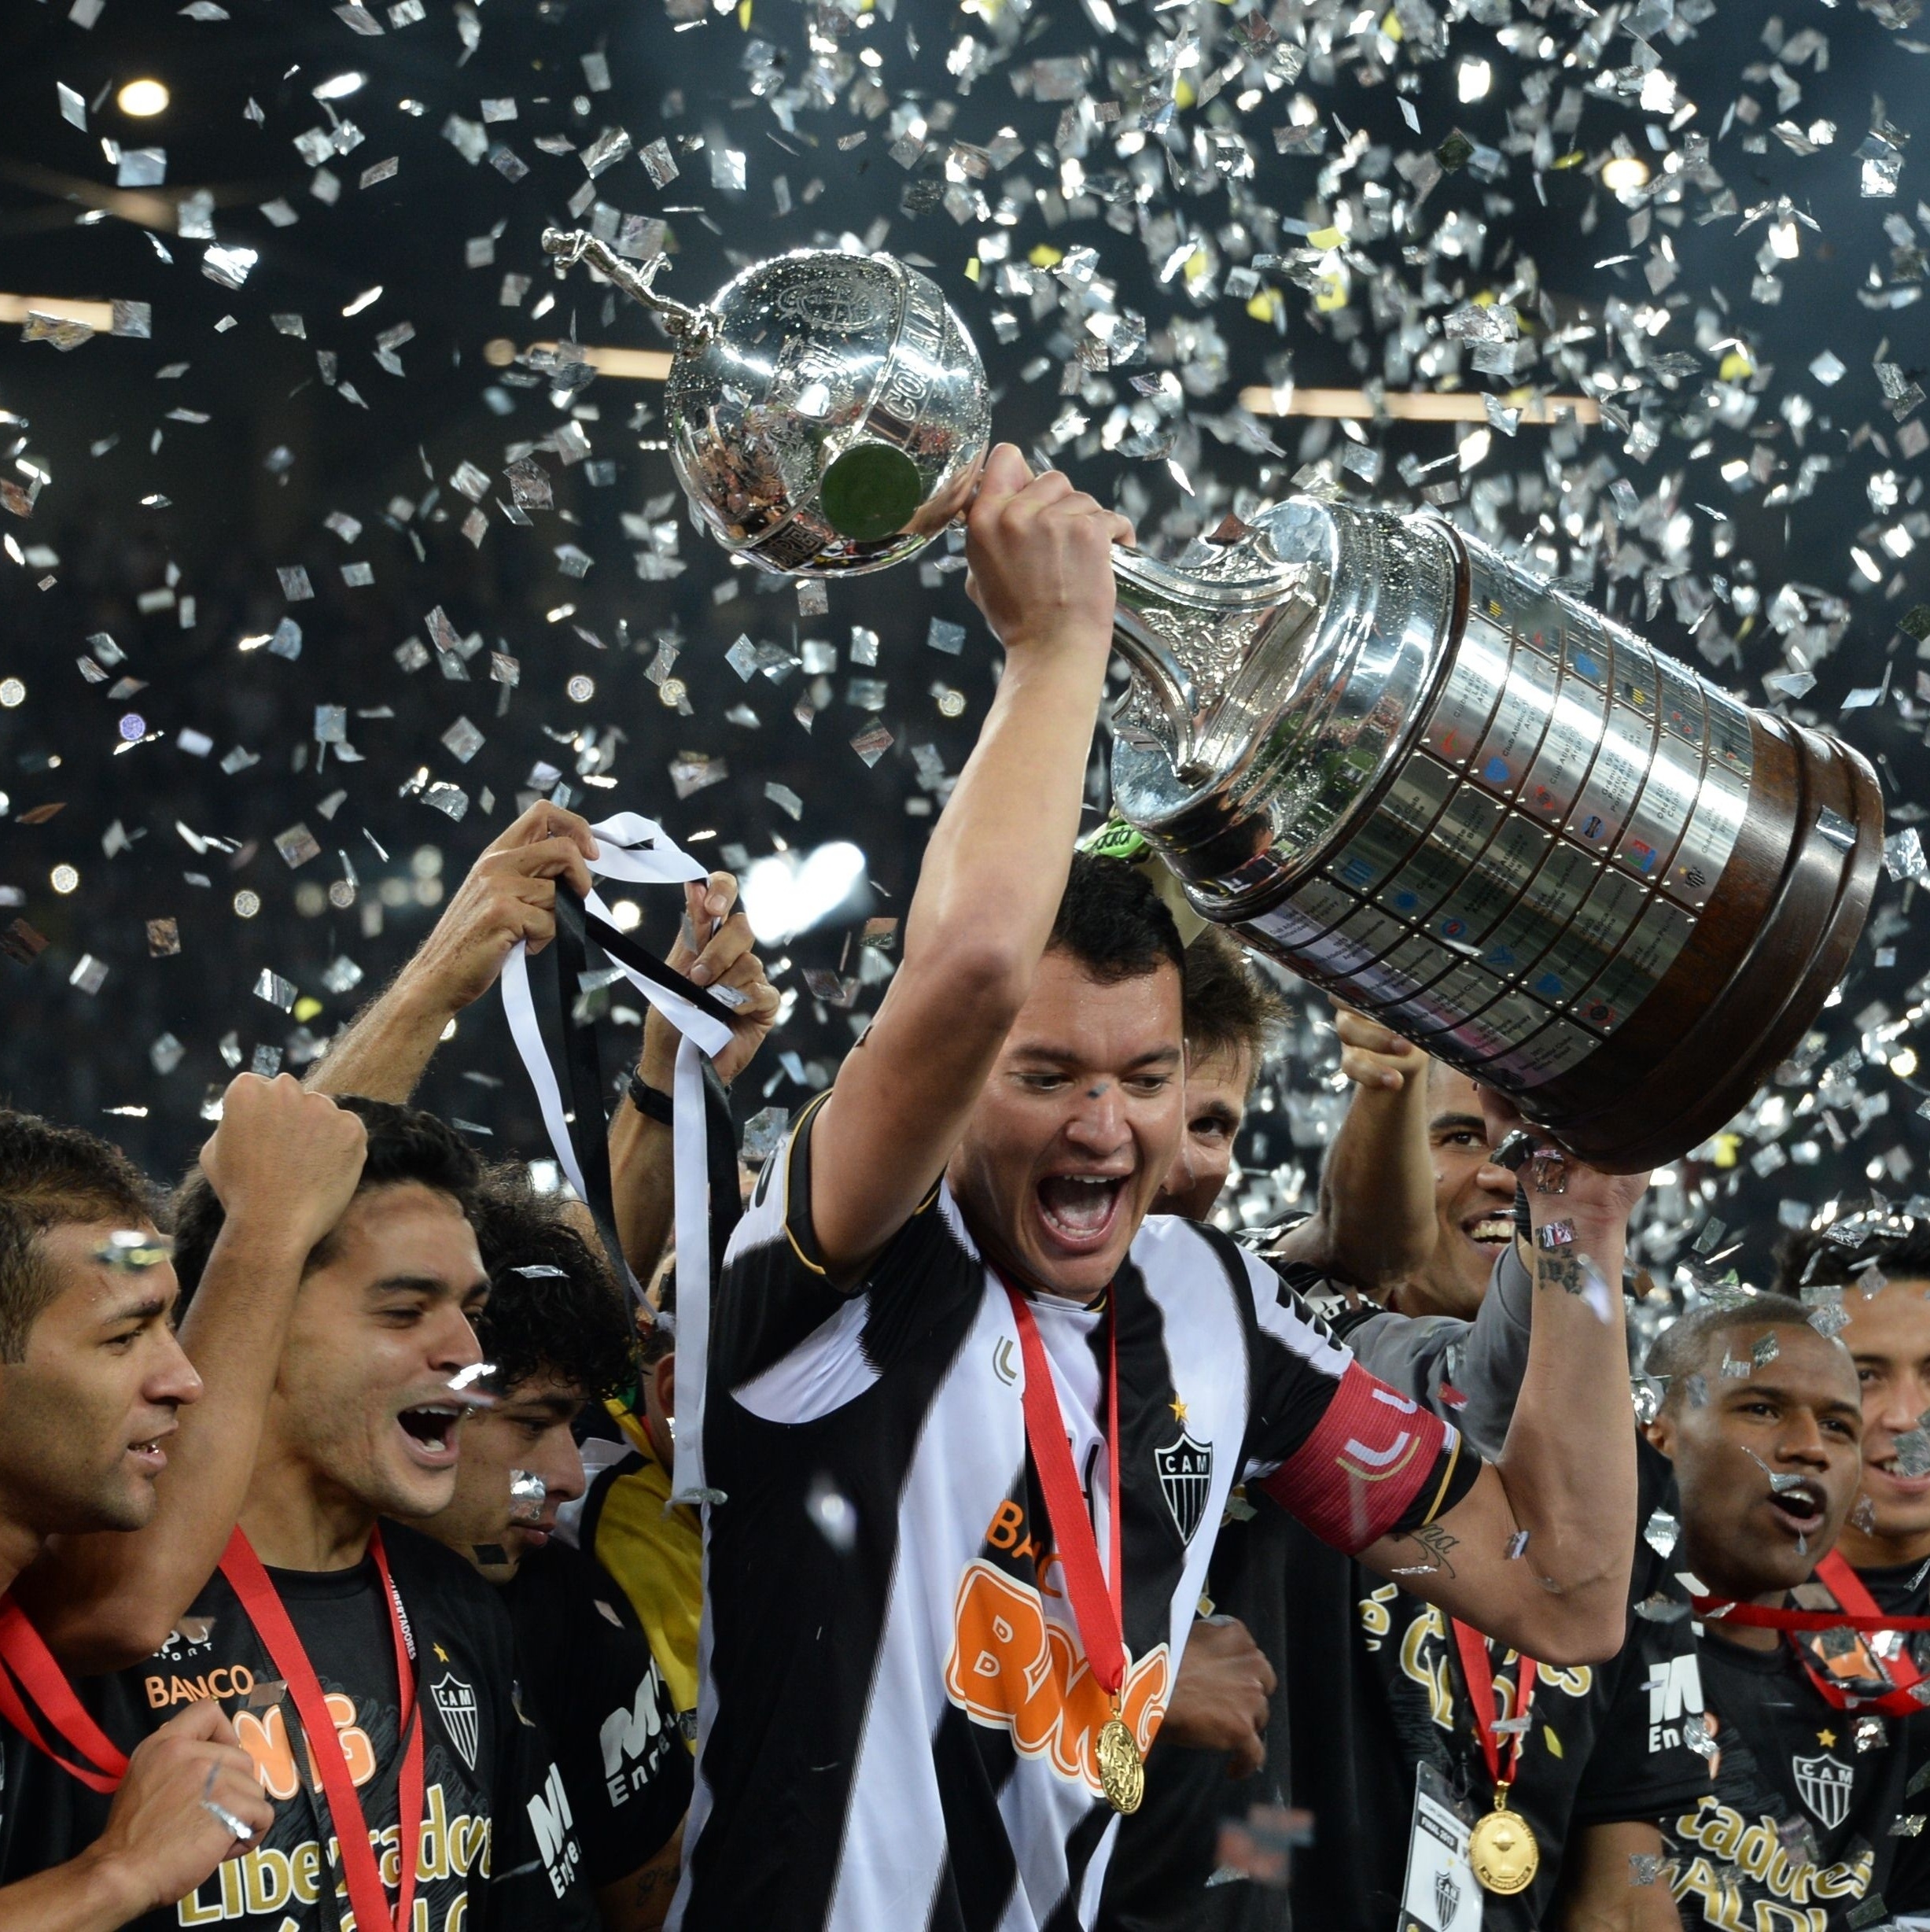 Atlético: campeão da Libertadores de 2013 é anunciado por time iraniano >  No Ataque